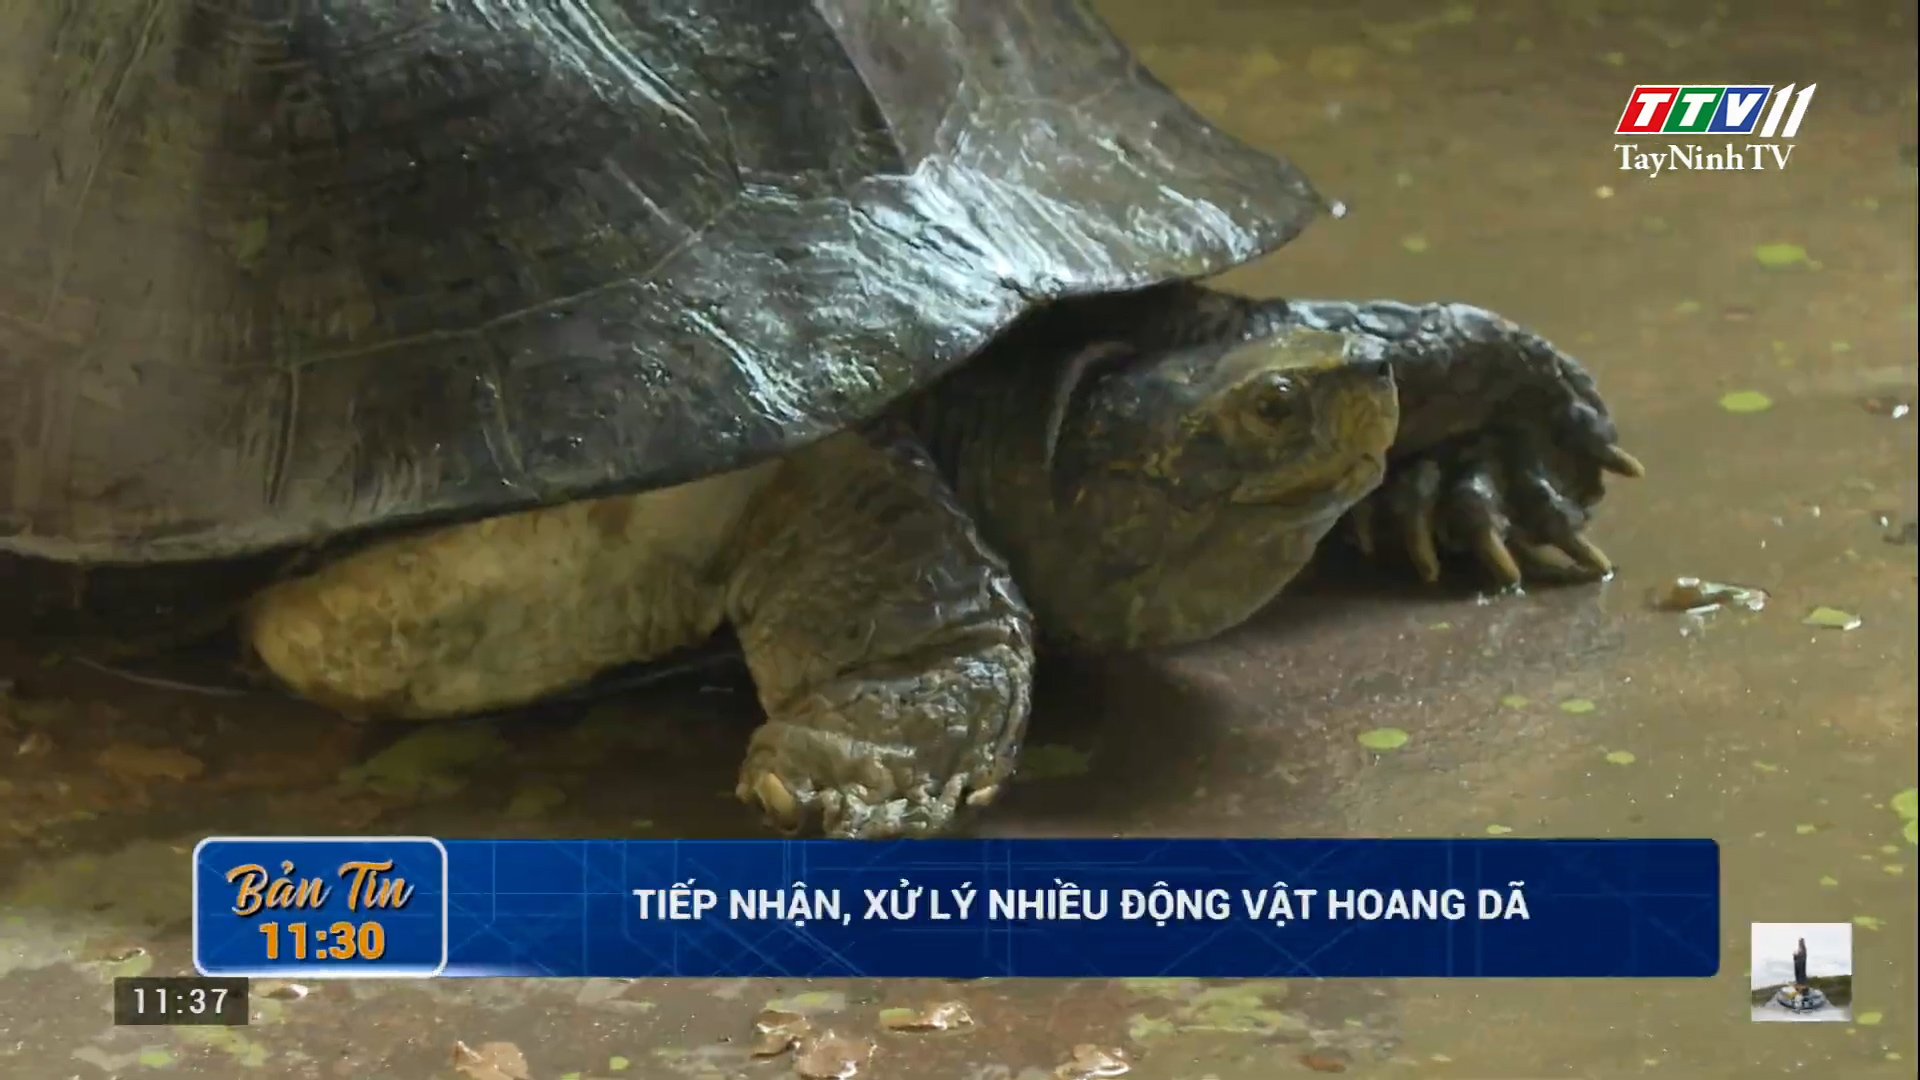 Tiếp nhận, xử lý nhiều động vật hoang dã | TayNinhTV